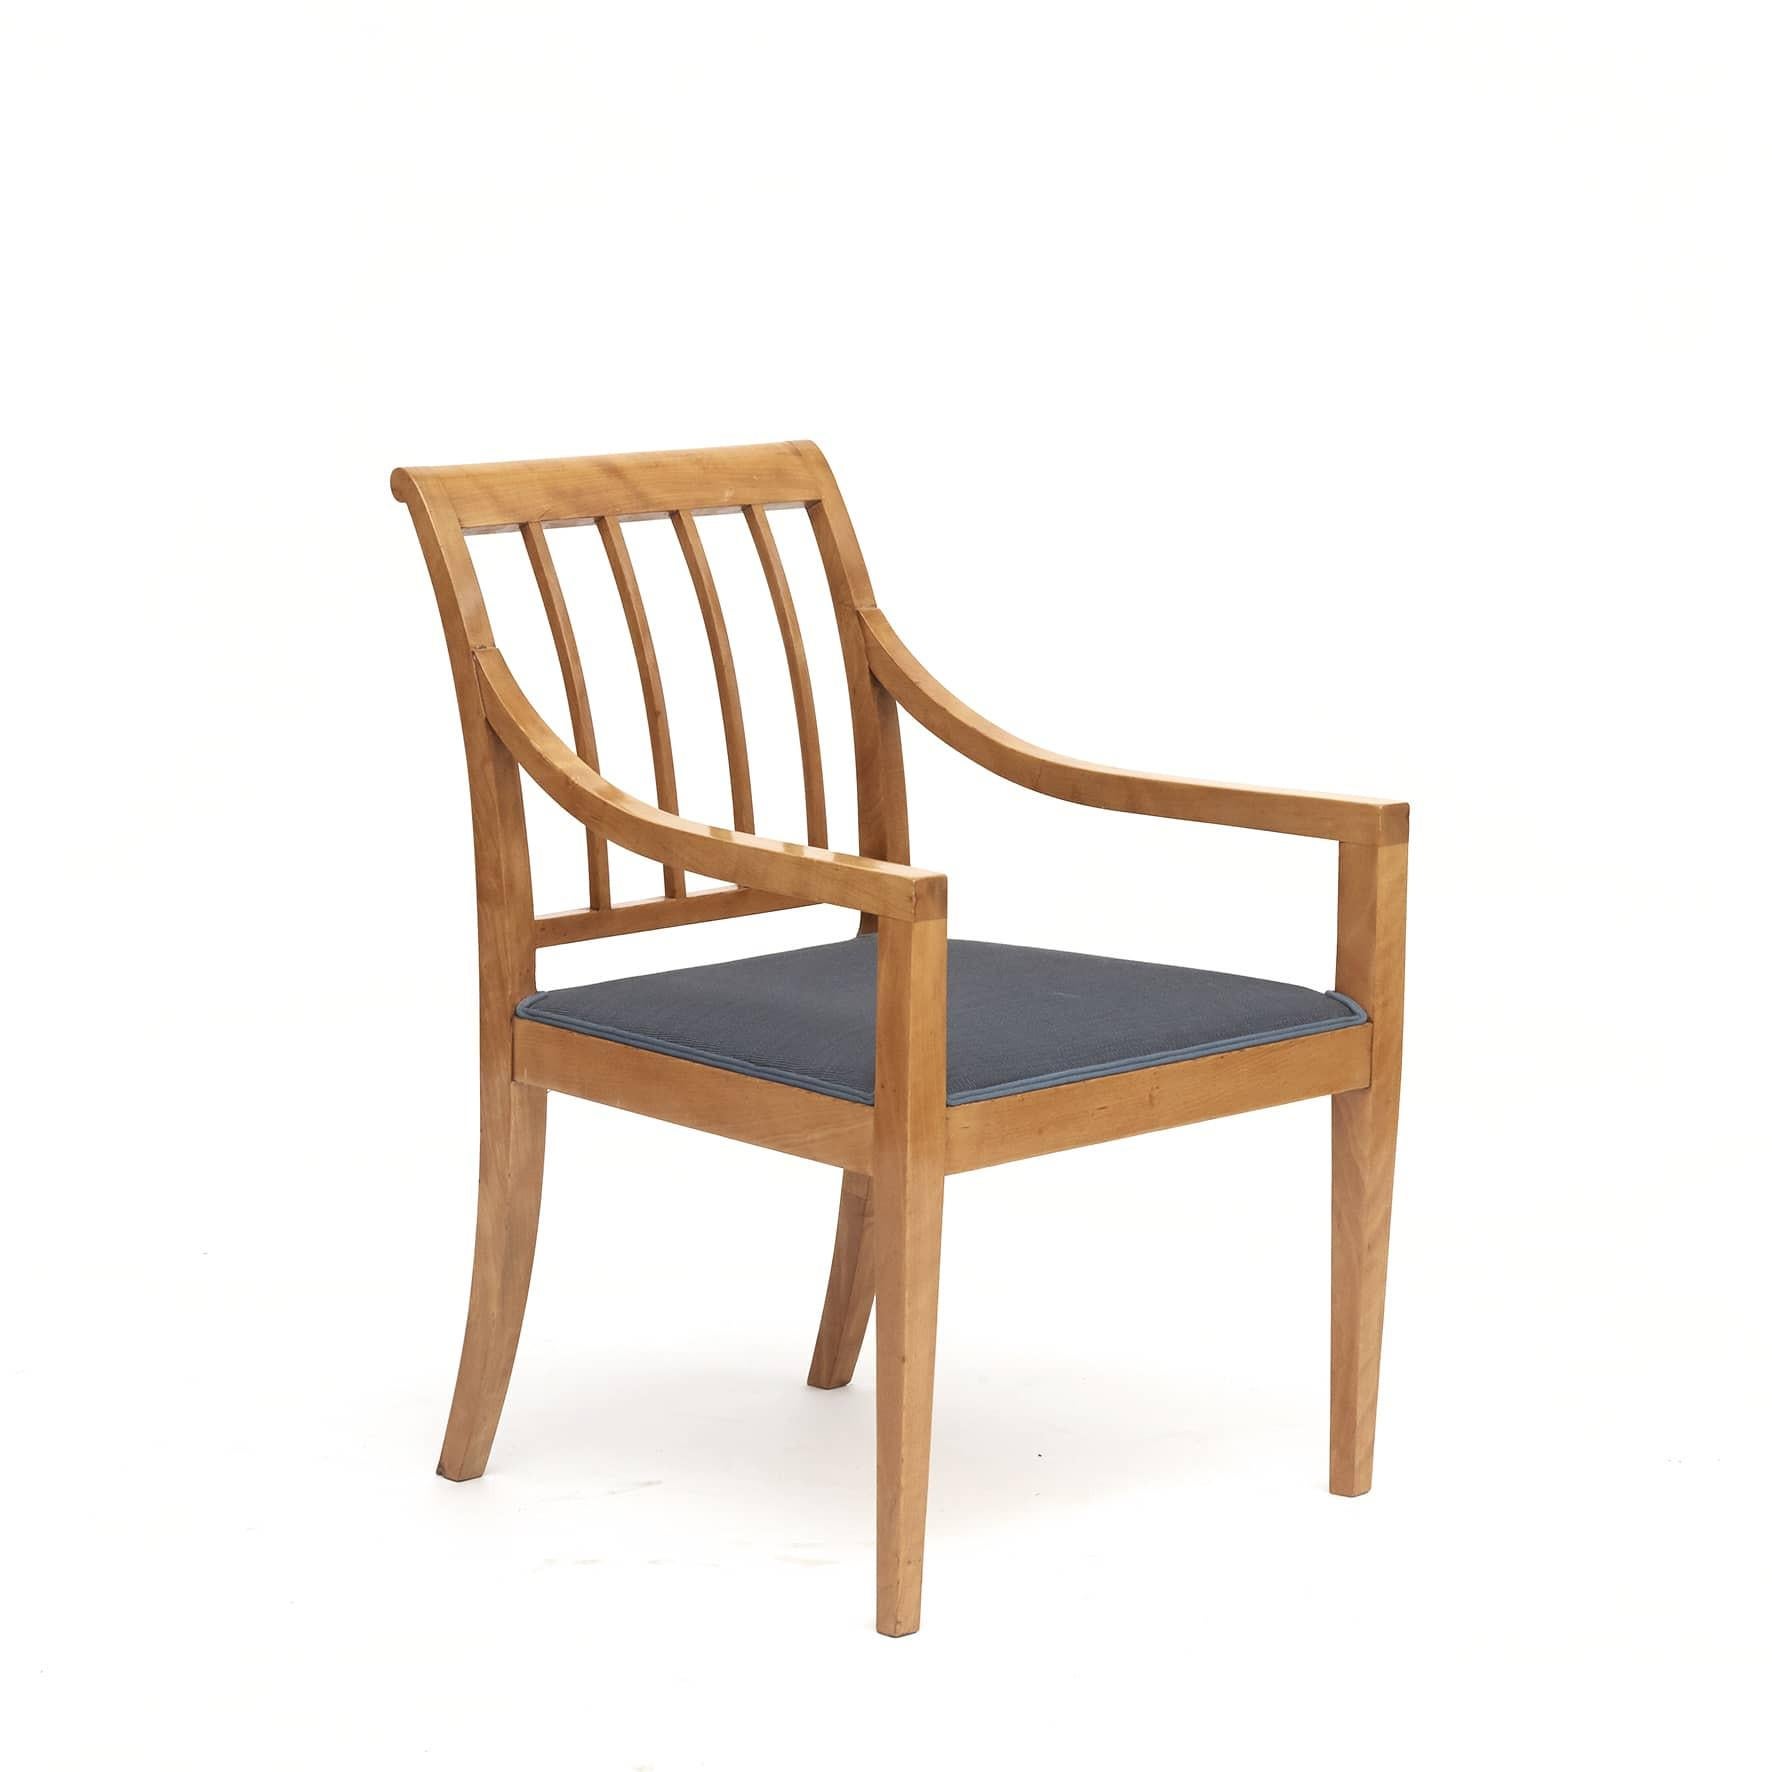 Paire de fauteuils Grace suédois.
Fabriqué en bouleau et recouvert d'un textile tissé bleu pétrole.
Vendu par paire (le prix est pour la paire) 